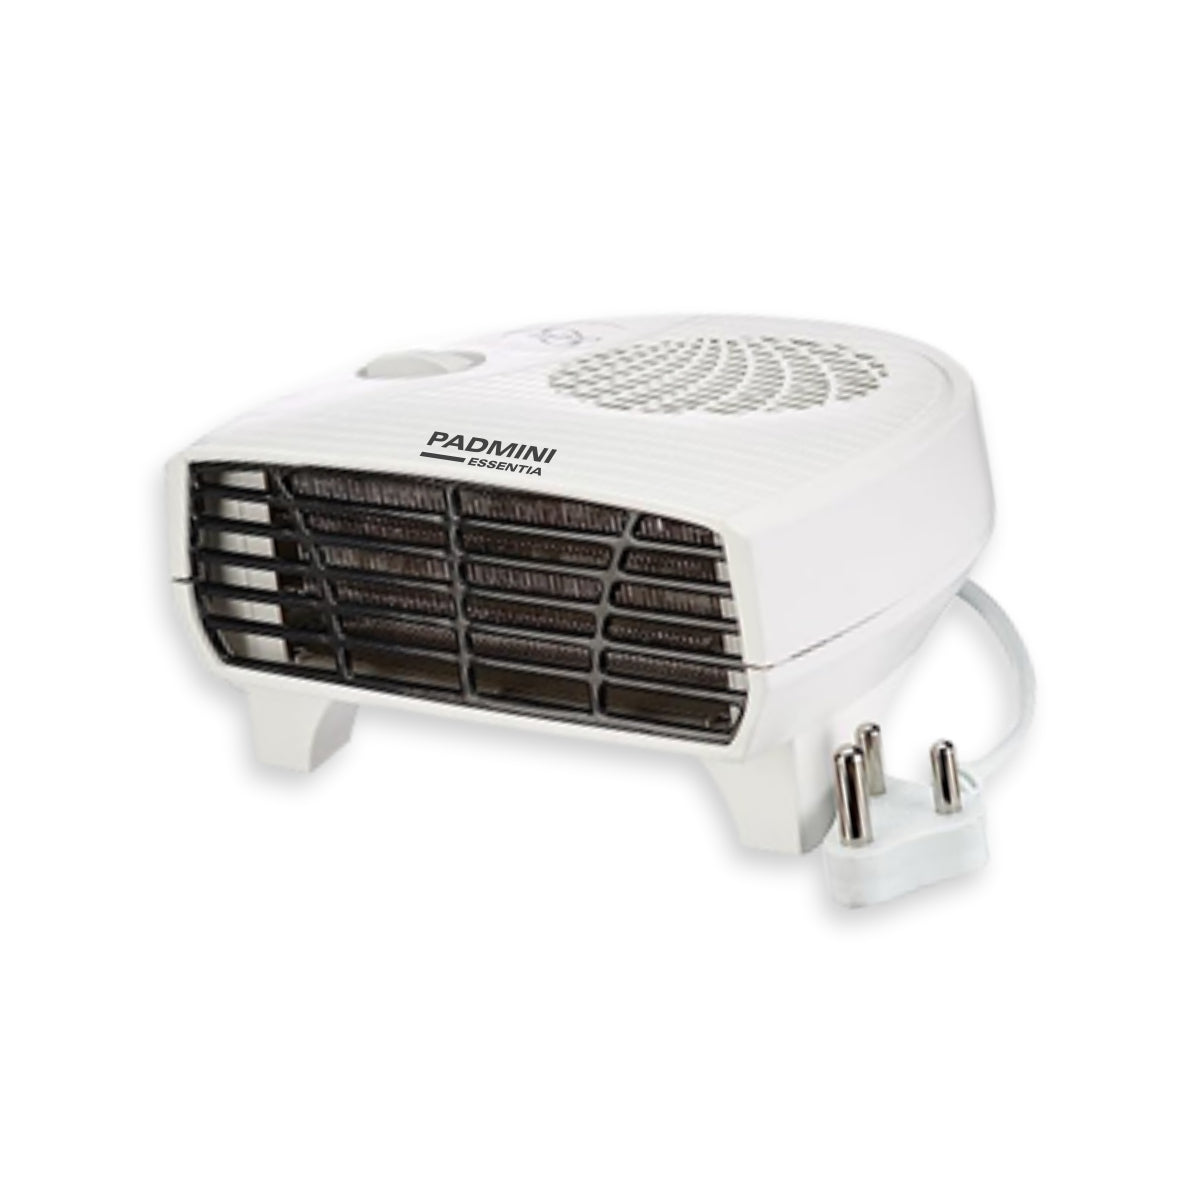 Stay warm with Fan Heater FH 101.